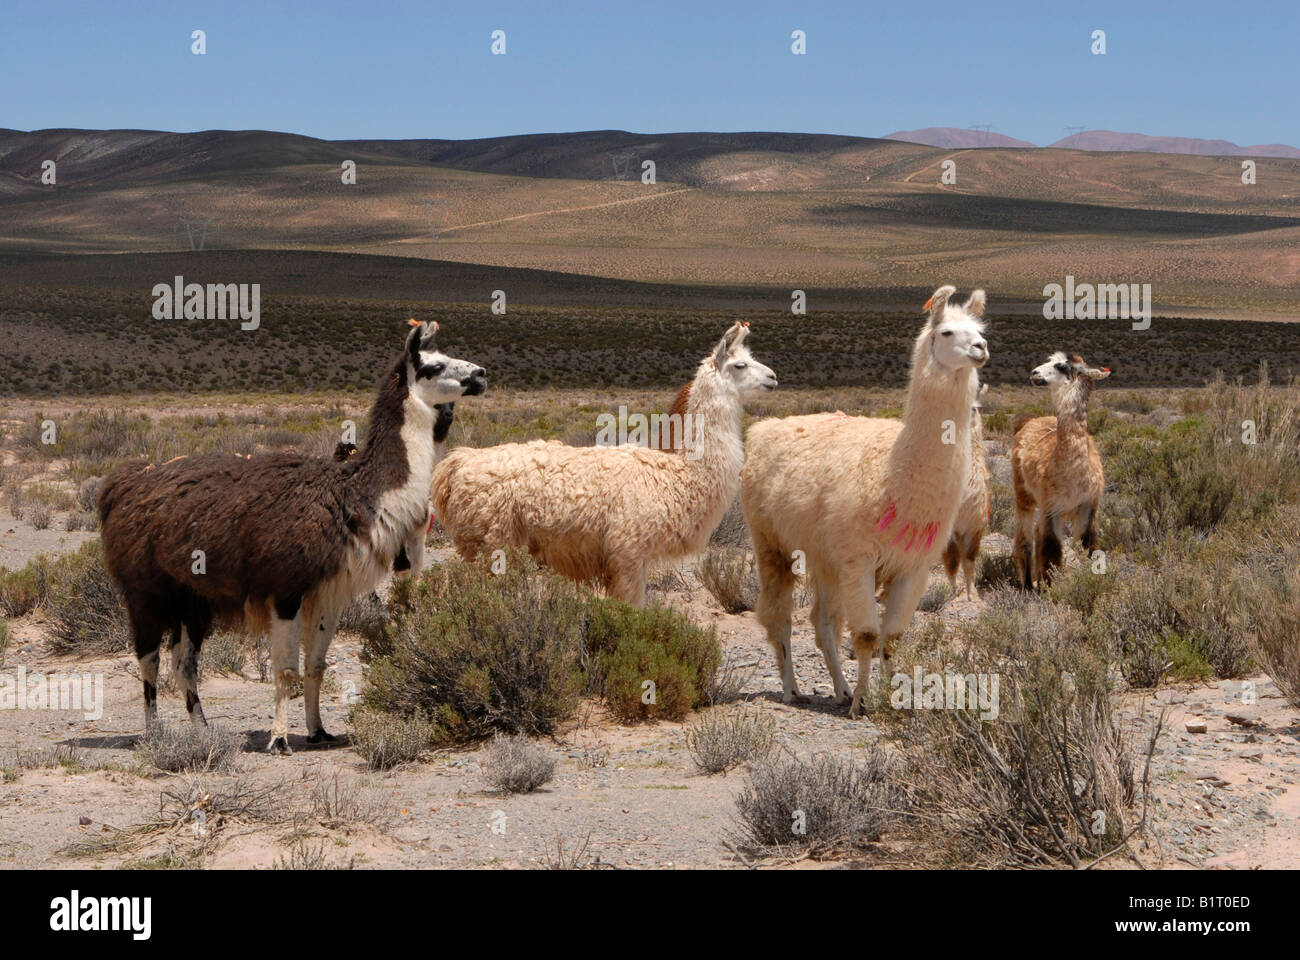 Llamas, Andean high plain, San Antonio de los Cobres, Salta Province, the Andes, Argentina, South America Stock Photo